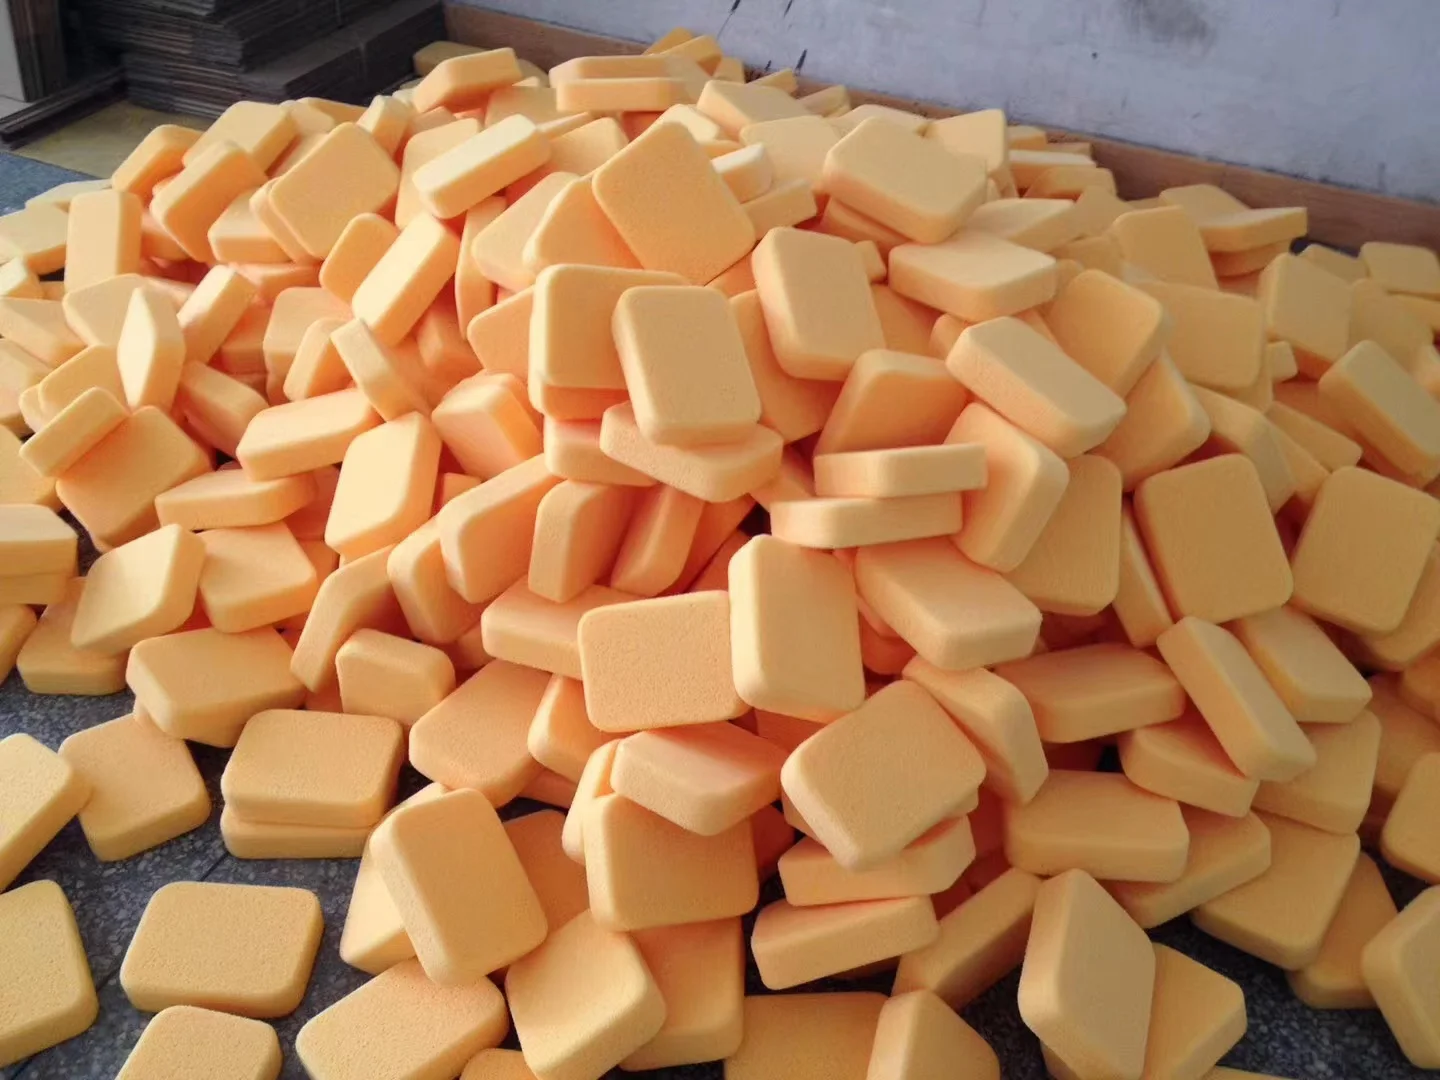 Профессиональные желтые губки для плитки BONNO, 25 плотности, полиуретановая пенопластовая губка для очистки пола